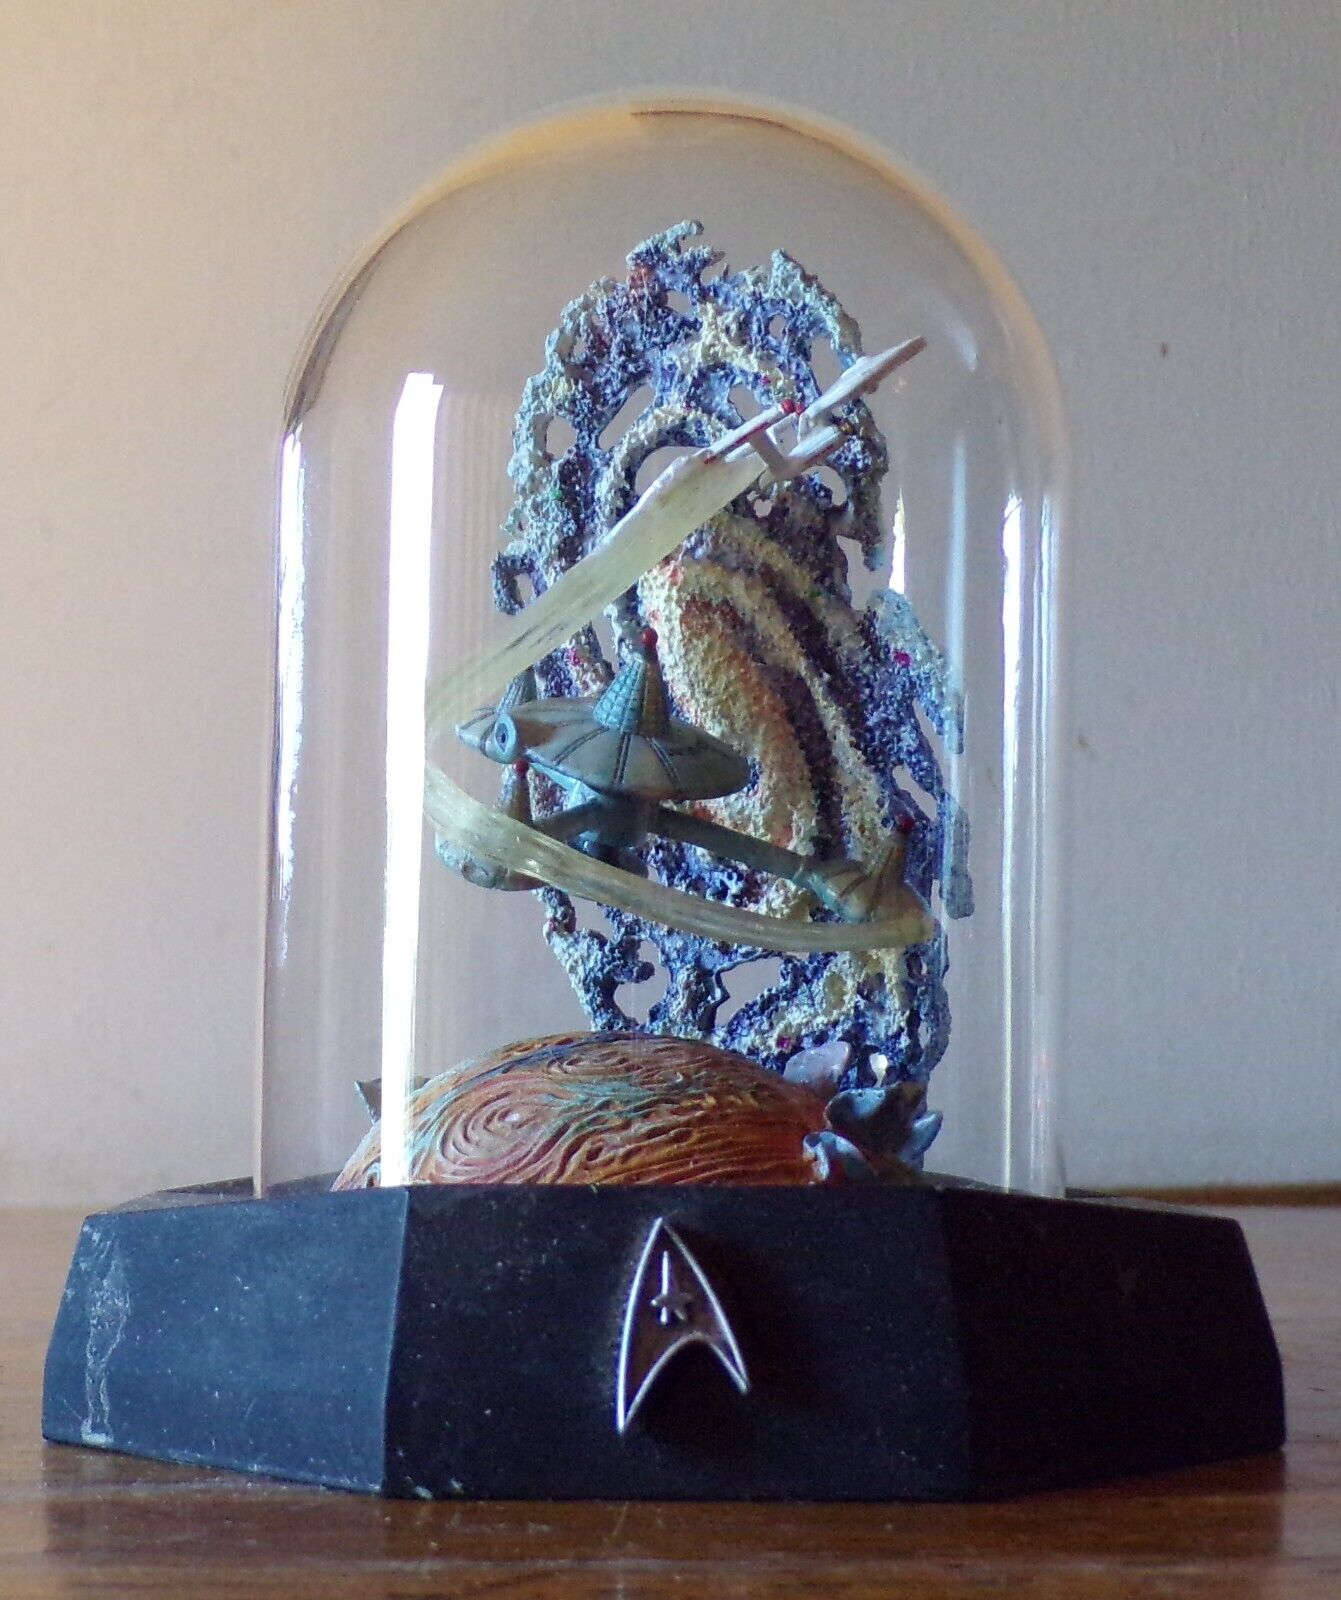 Star Trek Vintage 1996 Franklin Mint Limited Dome Sculpture Space Station K-7